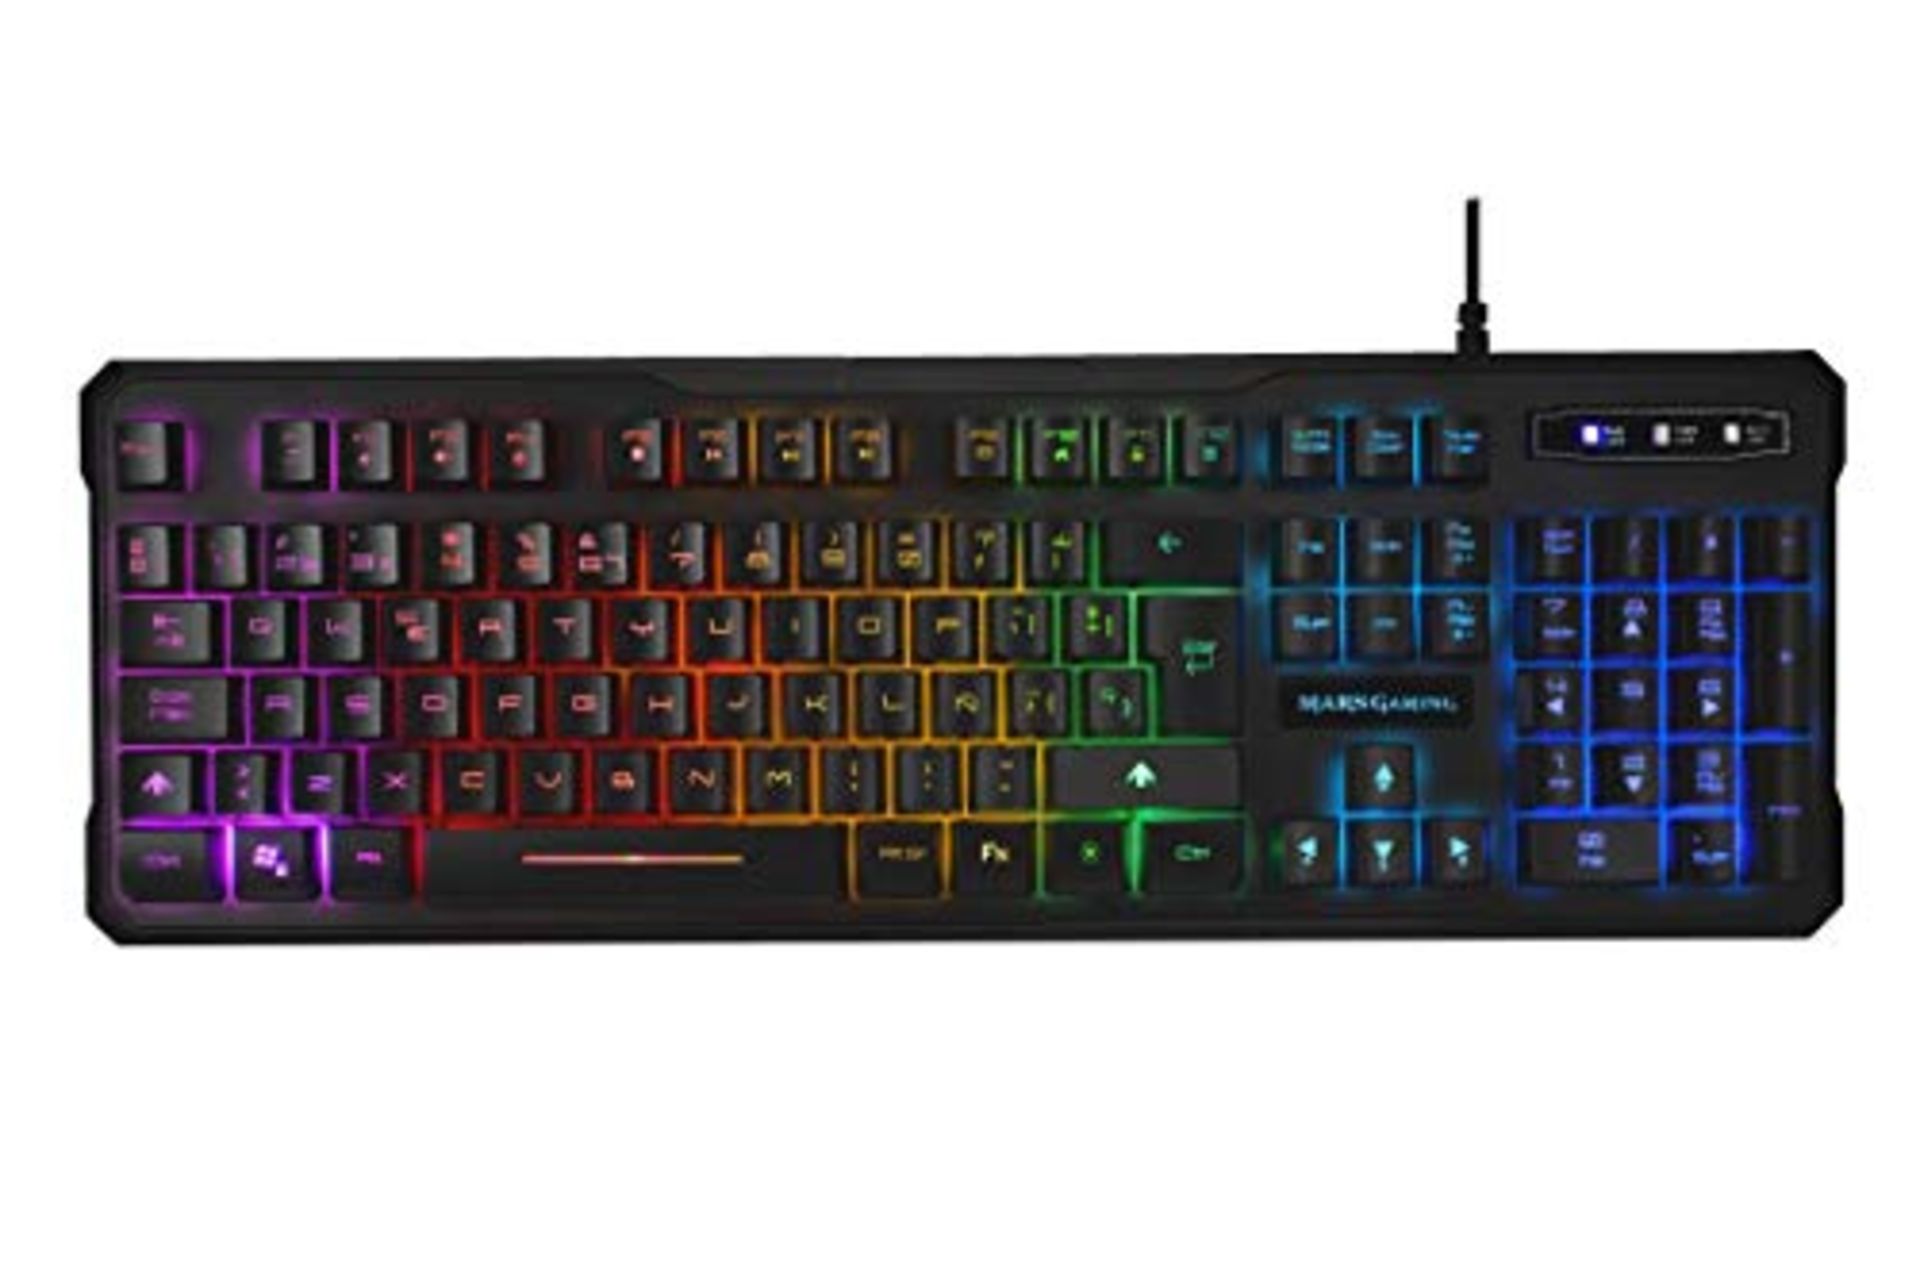 Mars Gaming Keyboard. MK218 Black